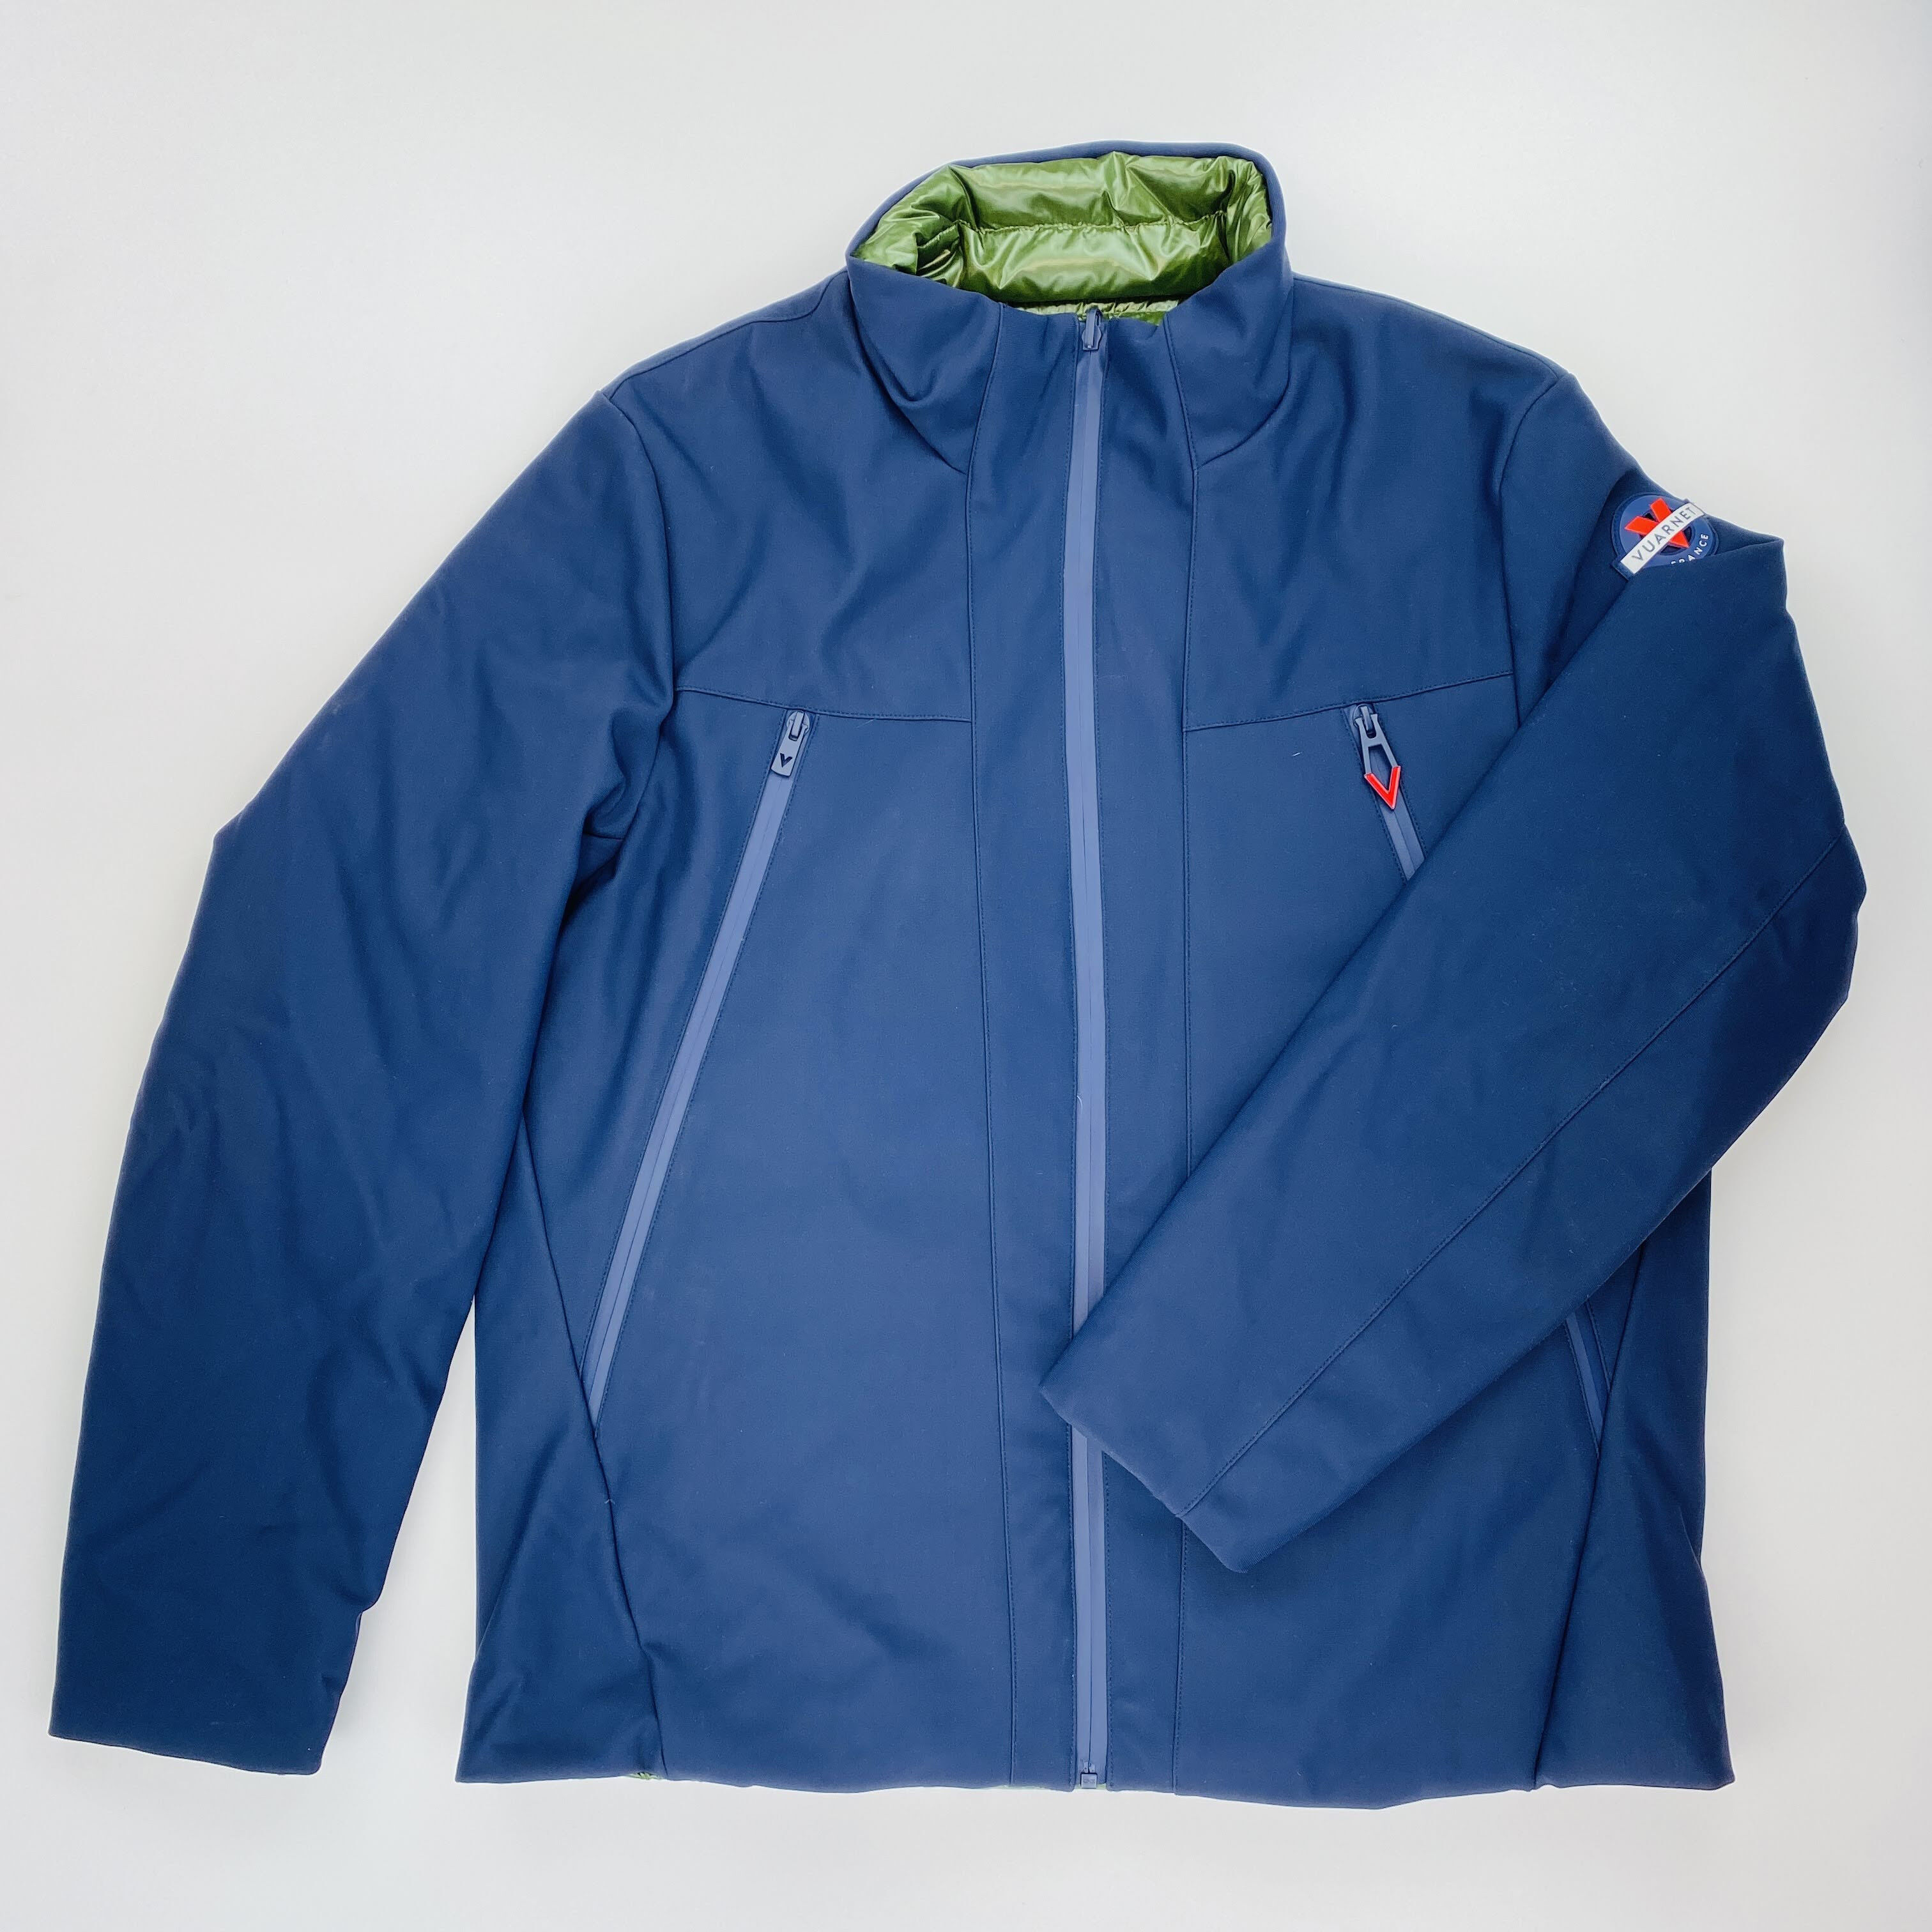 Vuarnet Lado Jacket - Segunda Mano Chaqueta - Hombre - Aceite azul - L | Hardloop